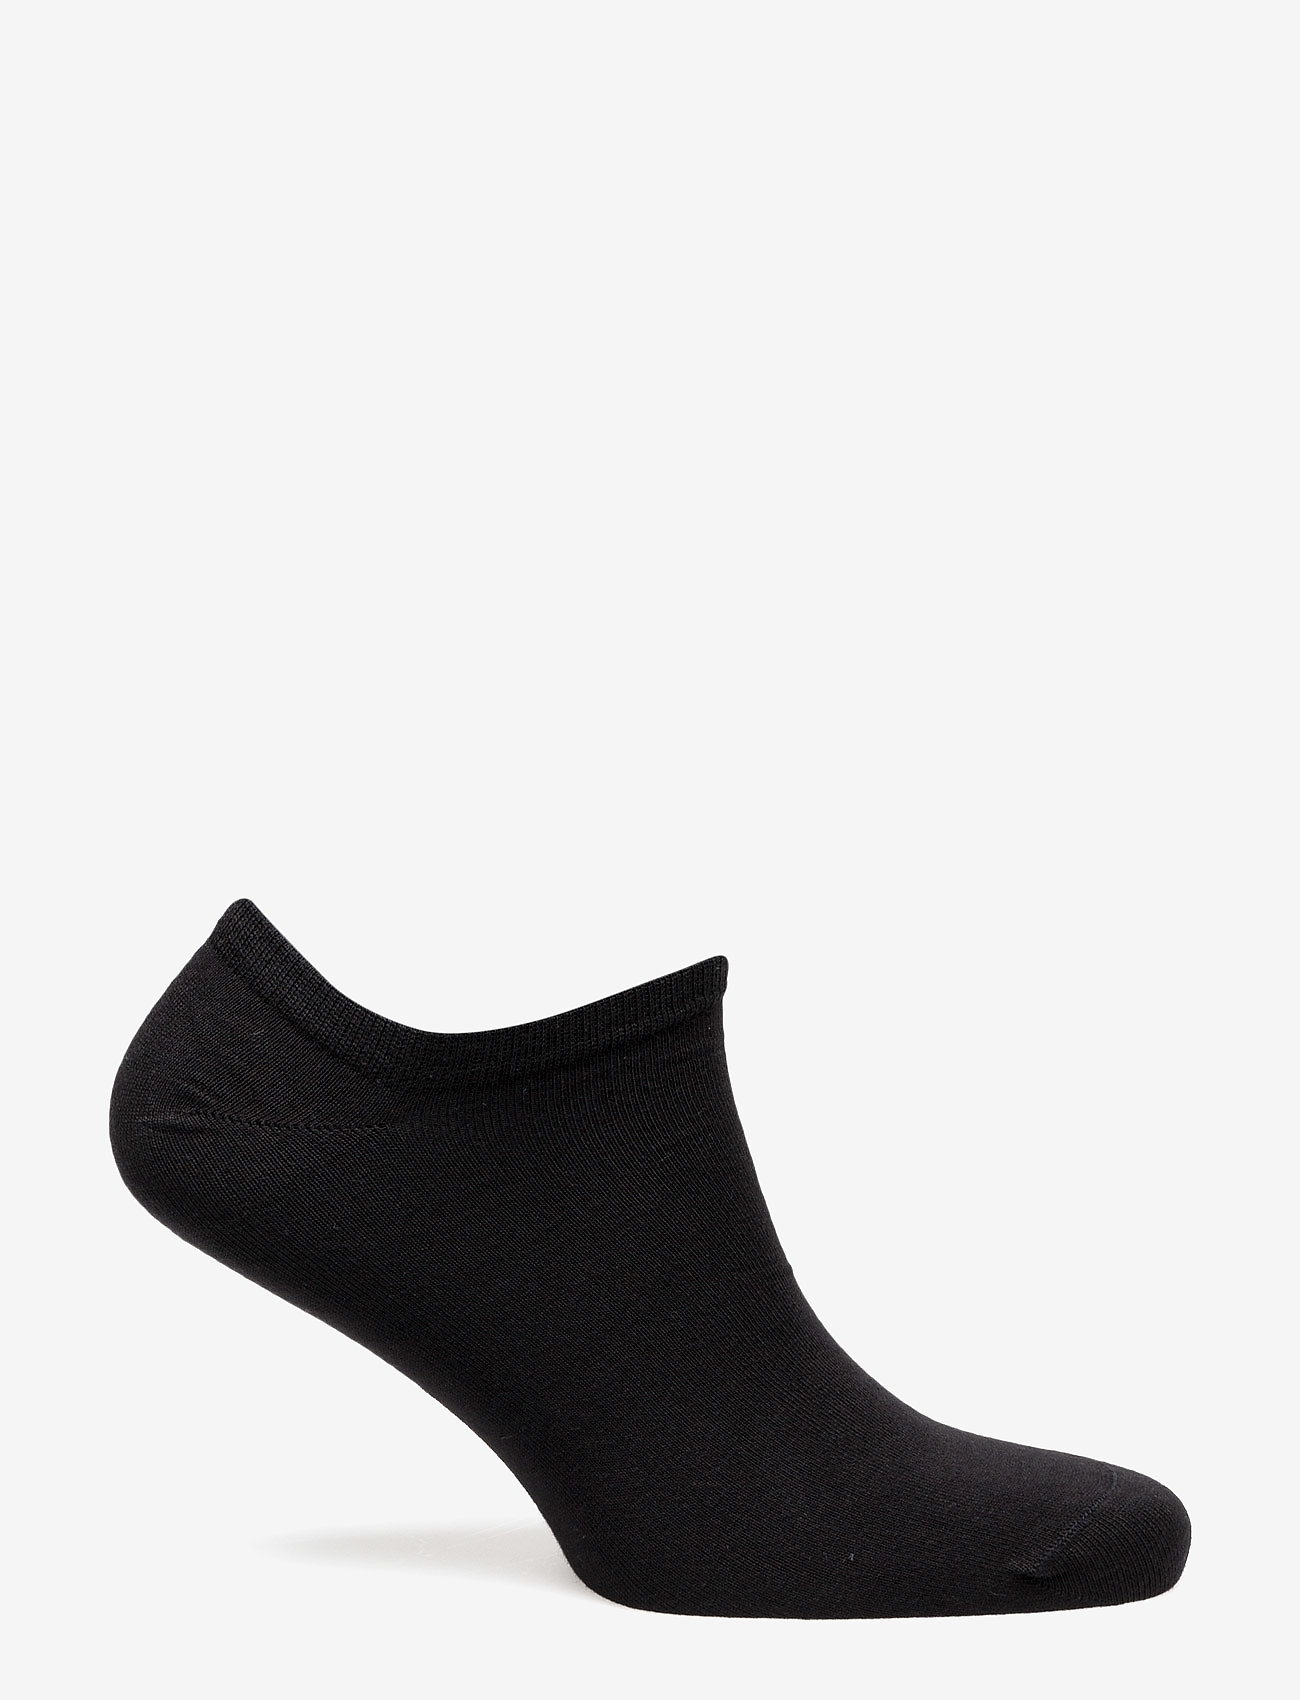 Decoy - Ladies thin sneaker sock - black - 1